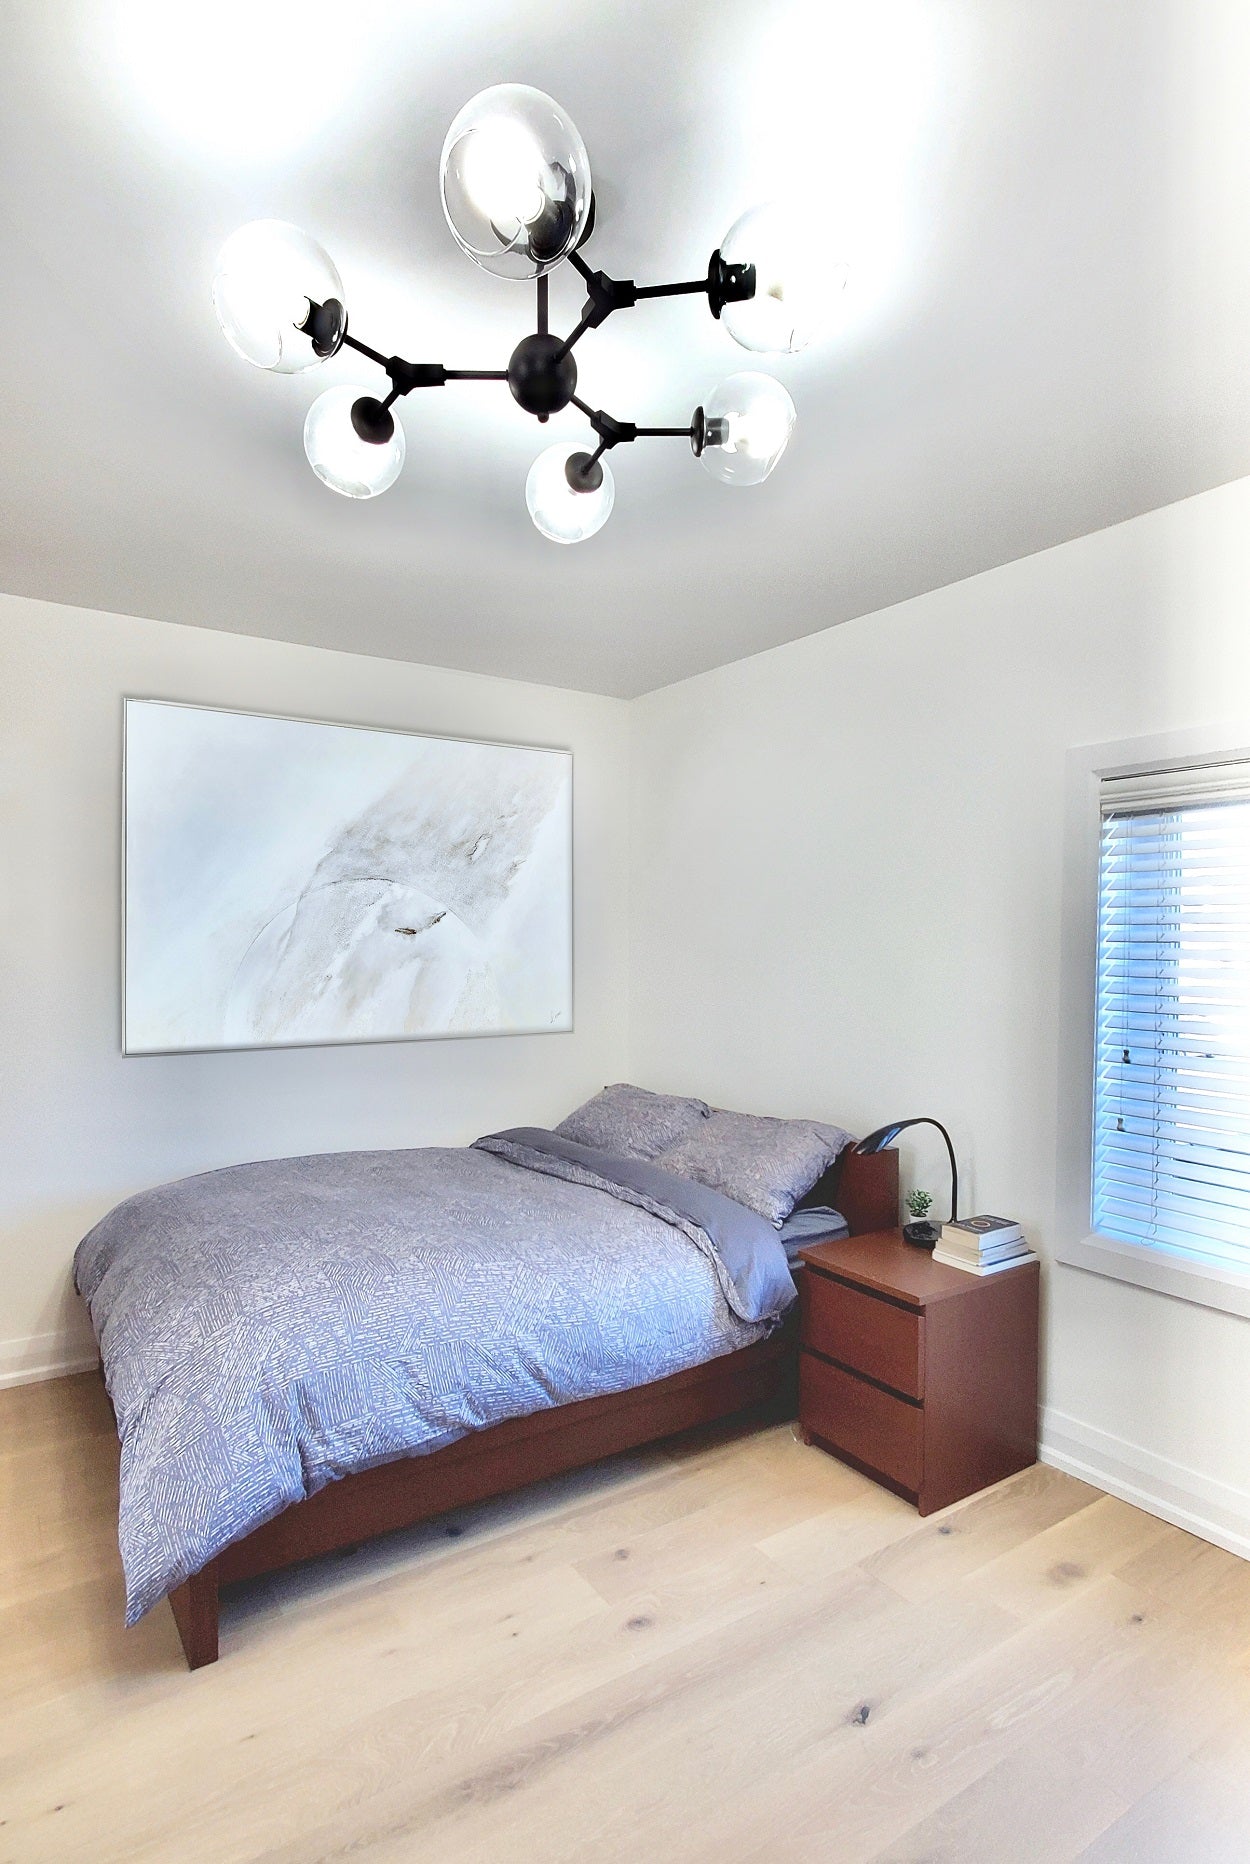 linear molecule light in bedroom, black linear light in bedroom